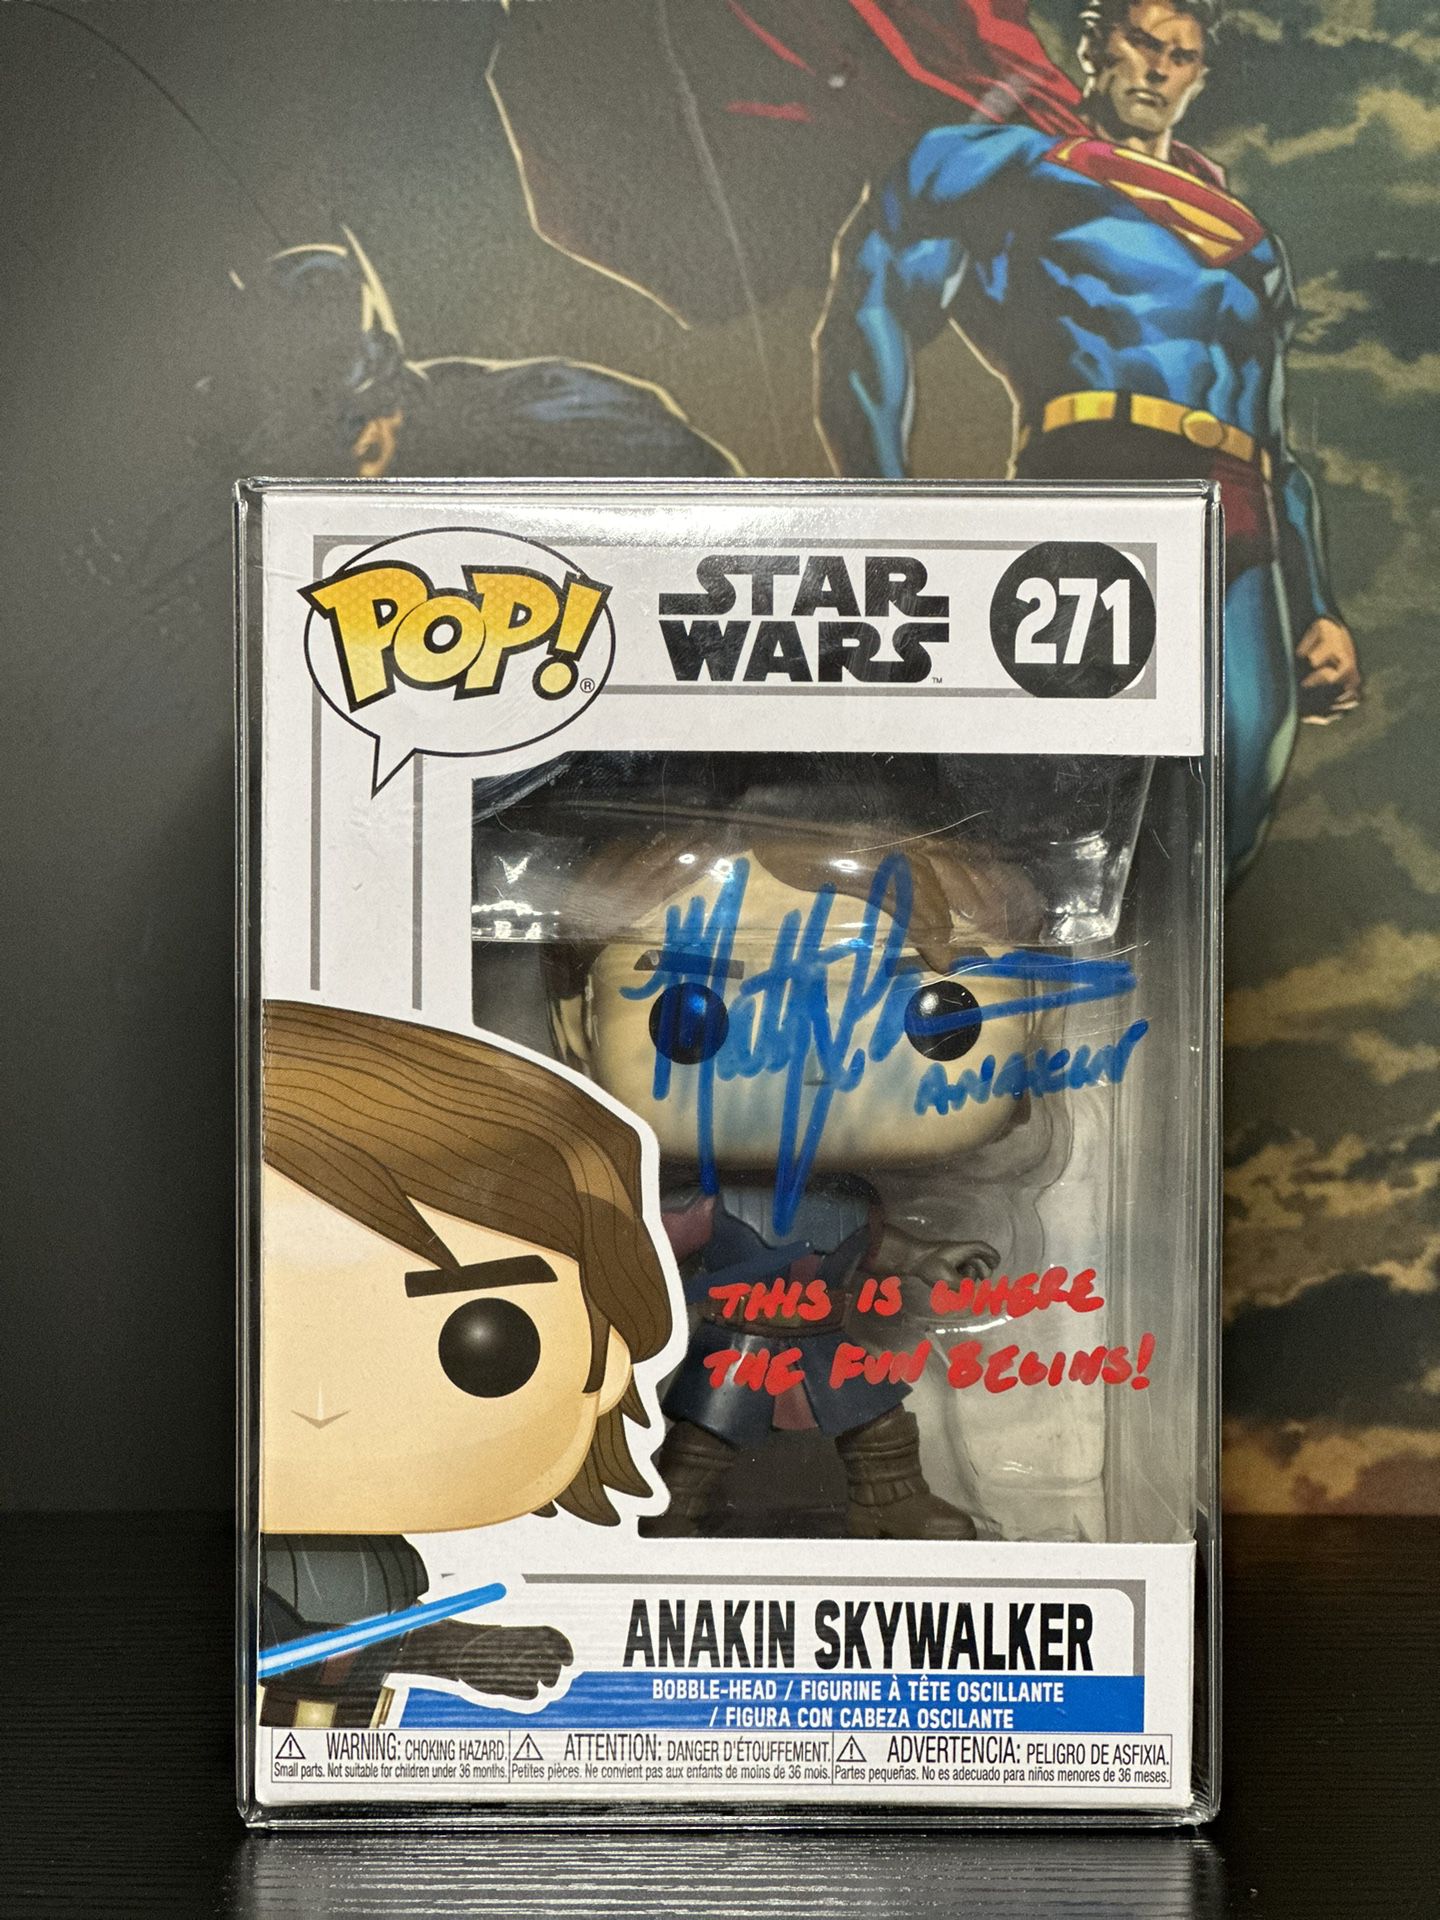 Anakin Skywalker Funko Pop